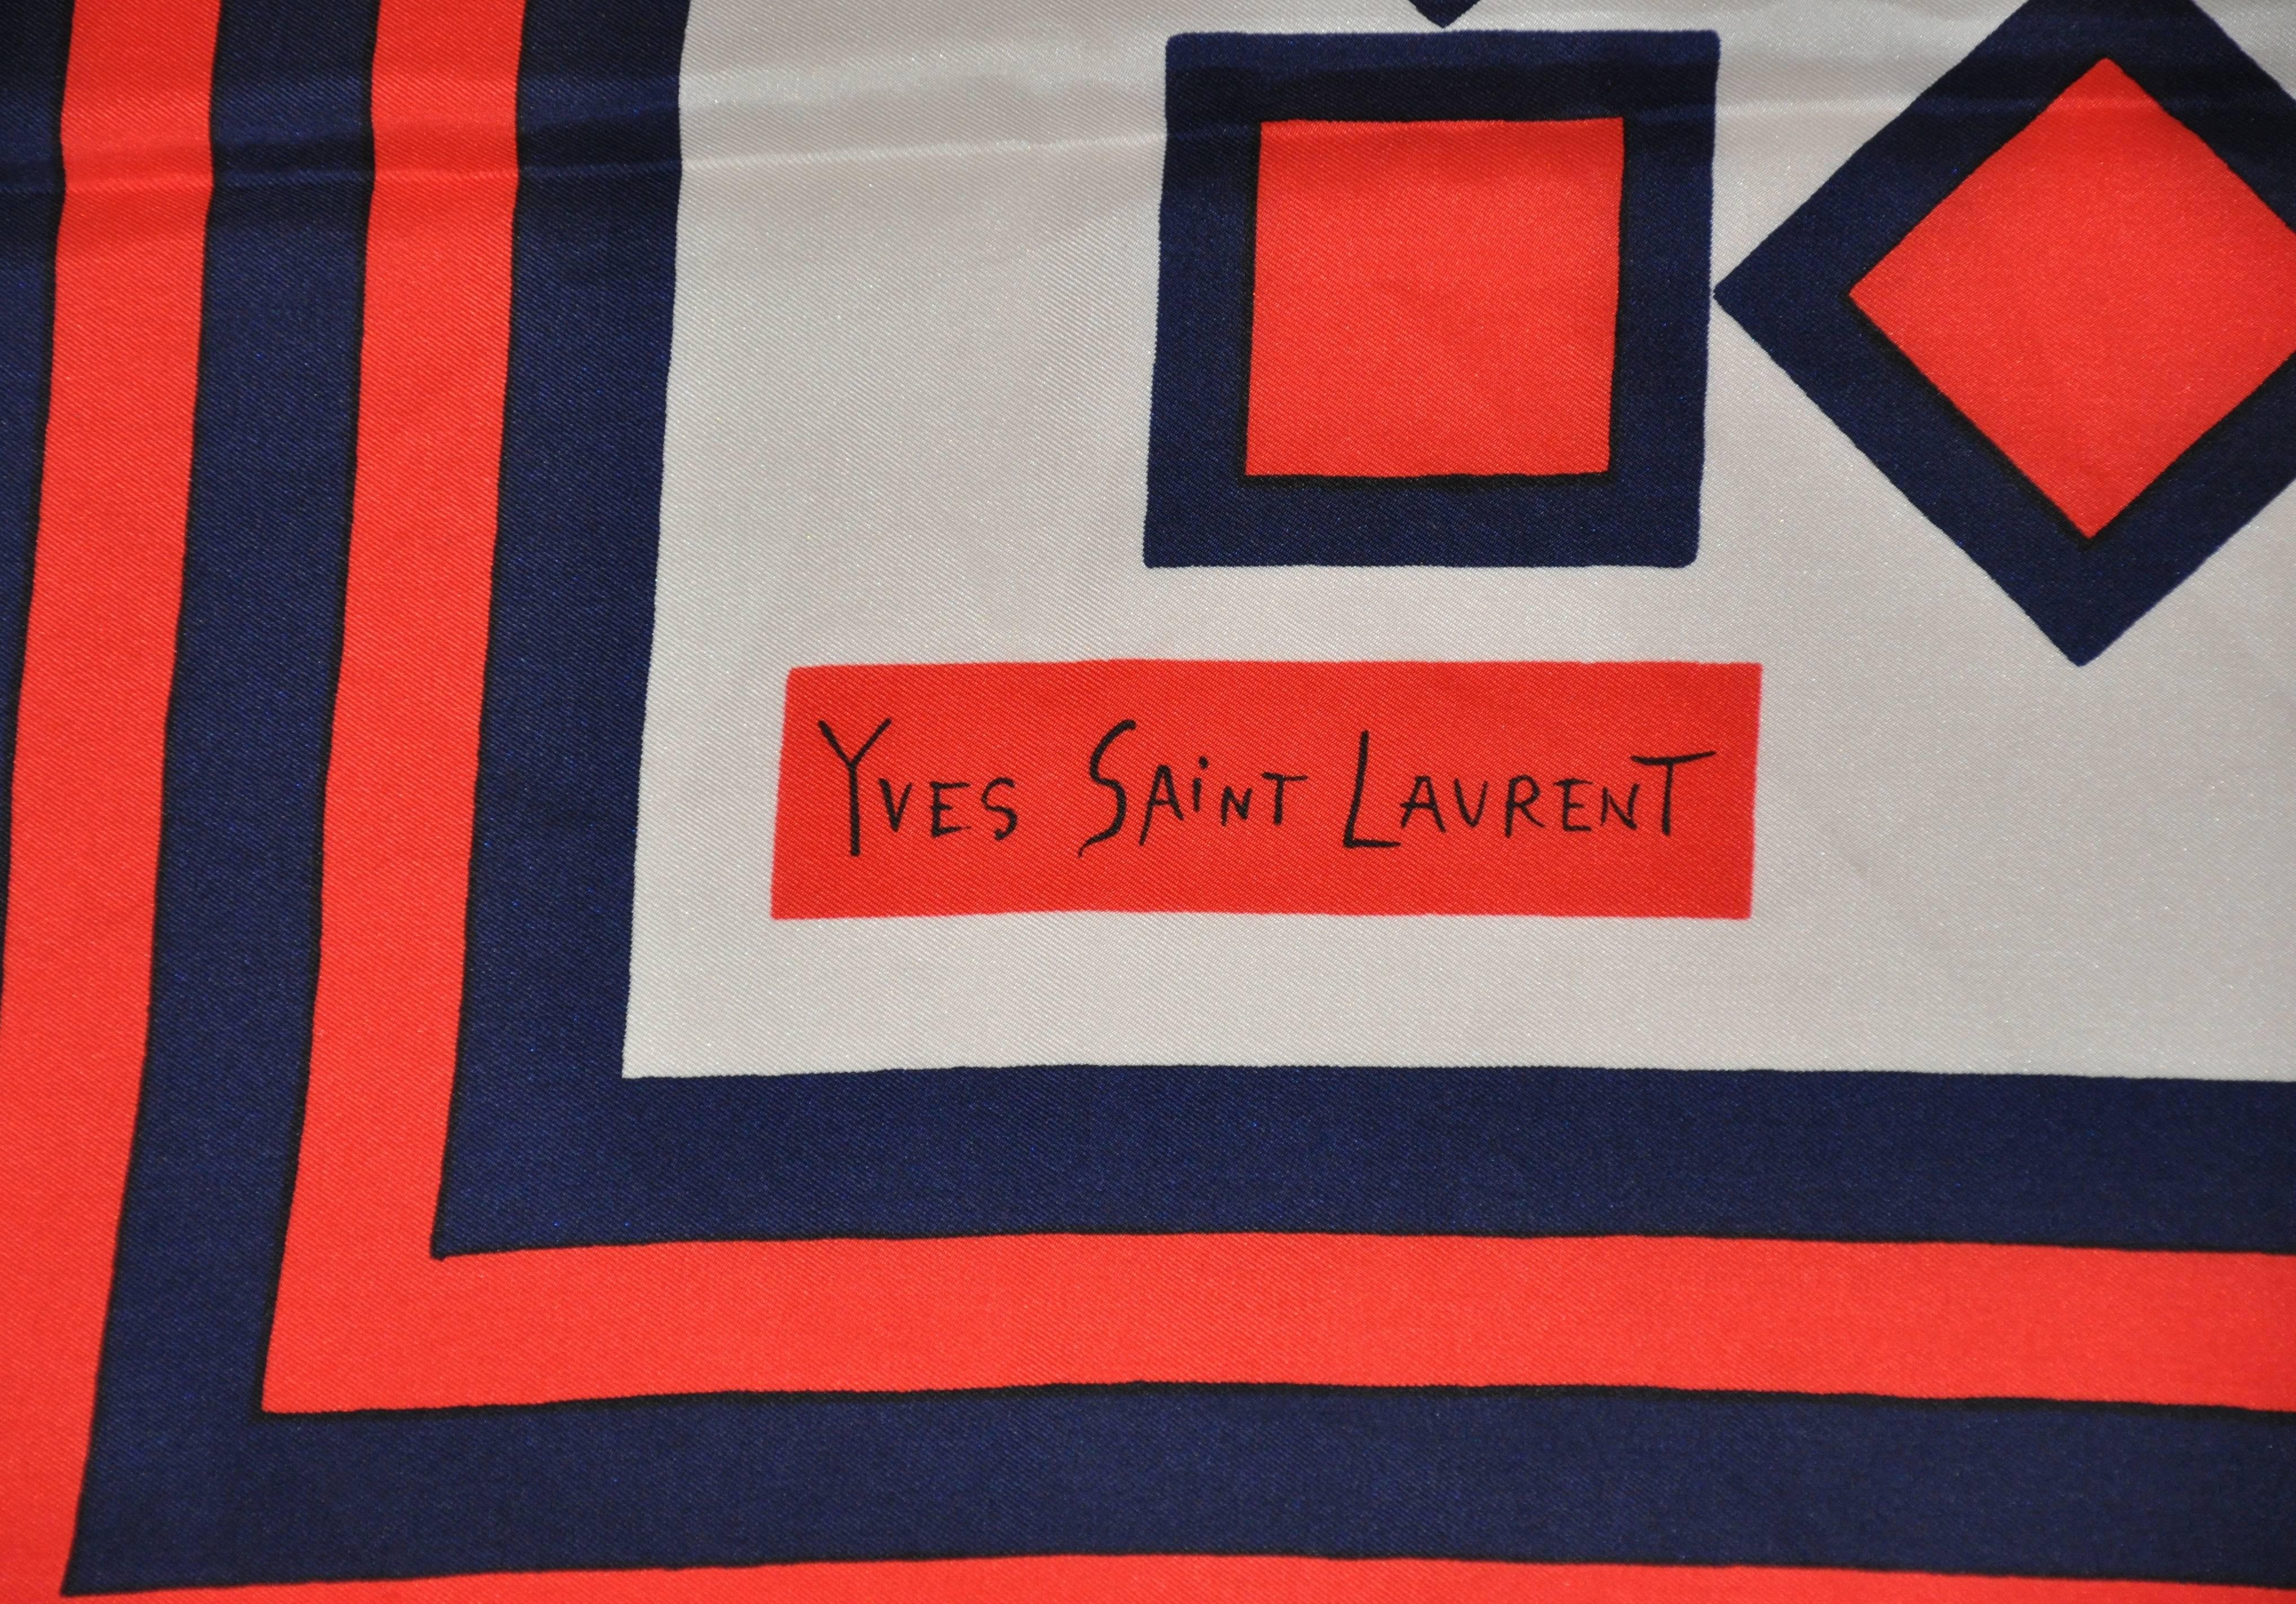           Yves Saint Laurent kühn Multi-Color abstrakten Druck Seidenschal misst 34 